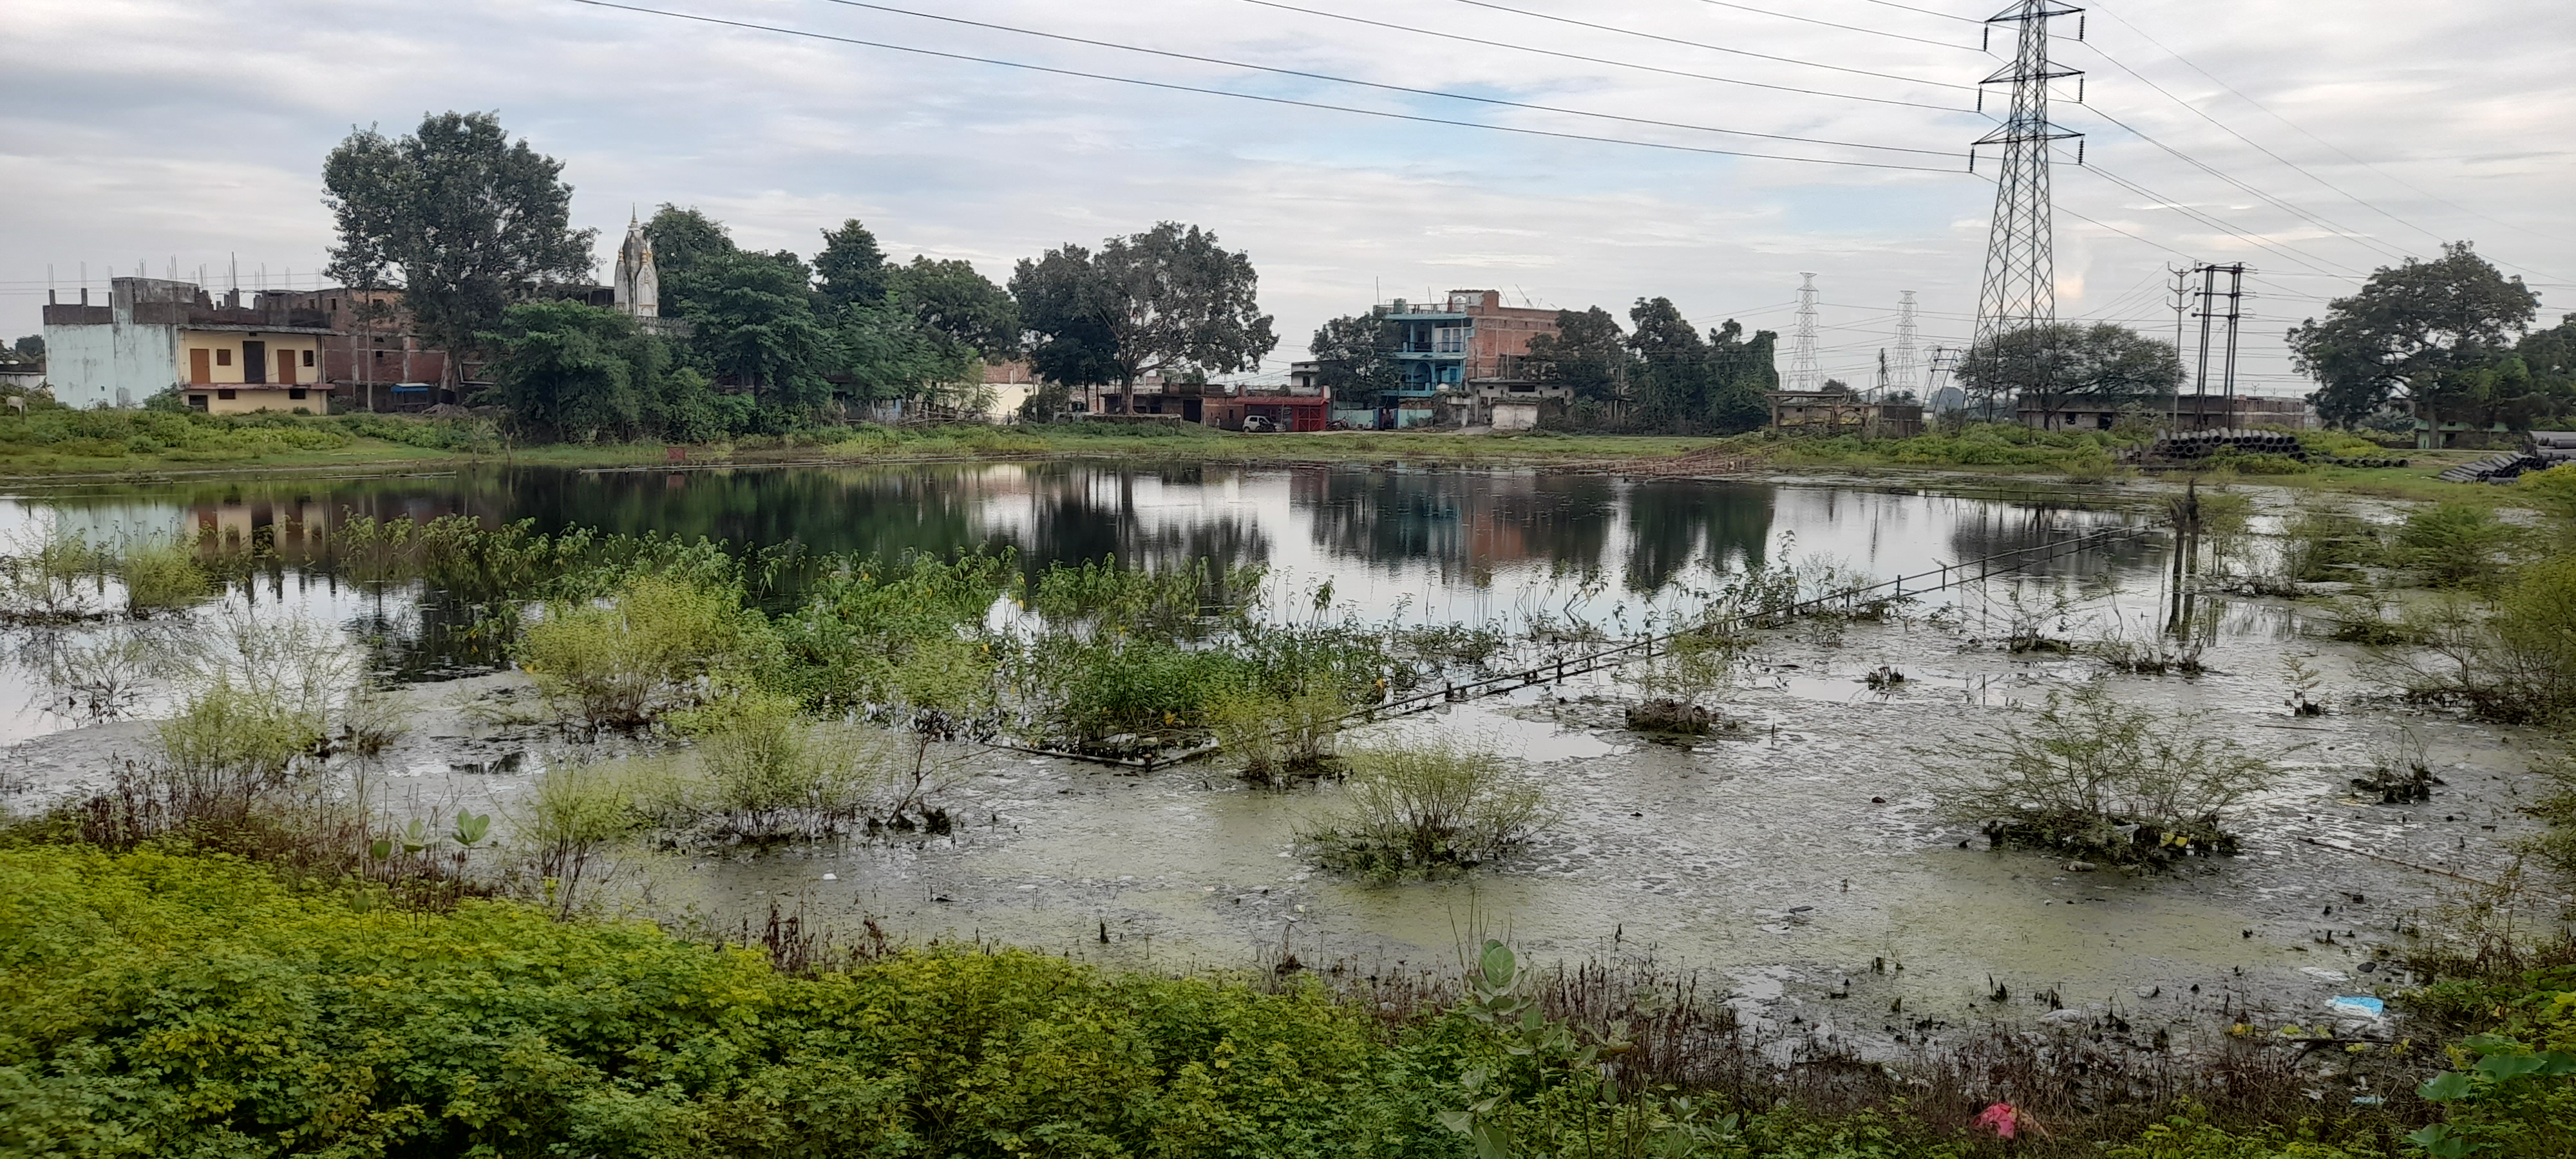 एनजीटी भोपाल का माजनकला तालाब पर बड़ा फैसला